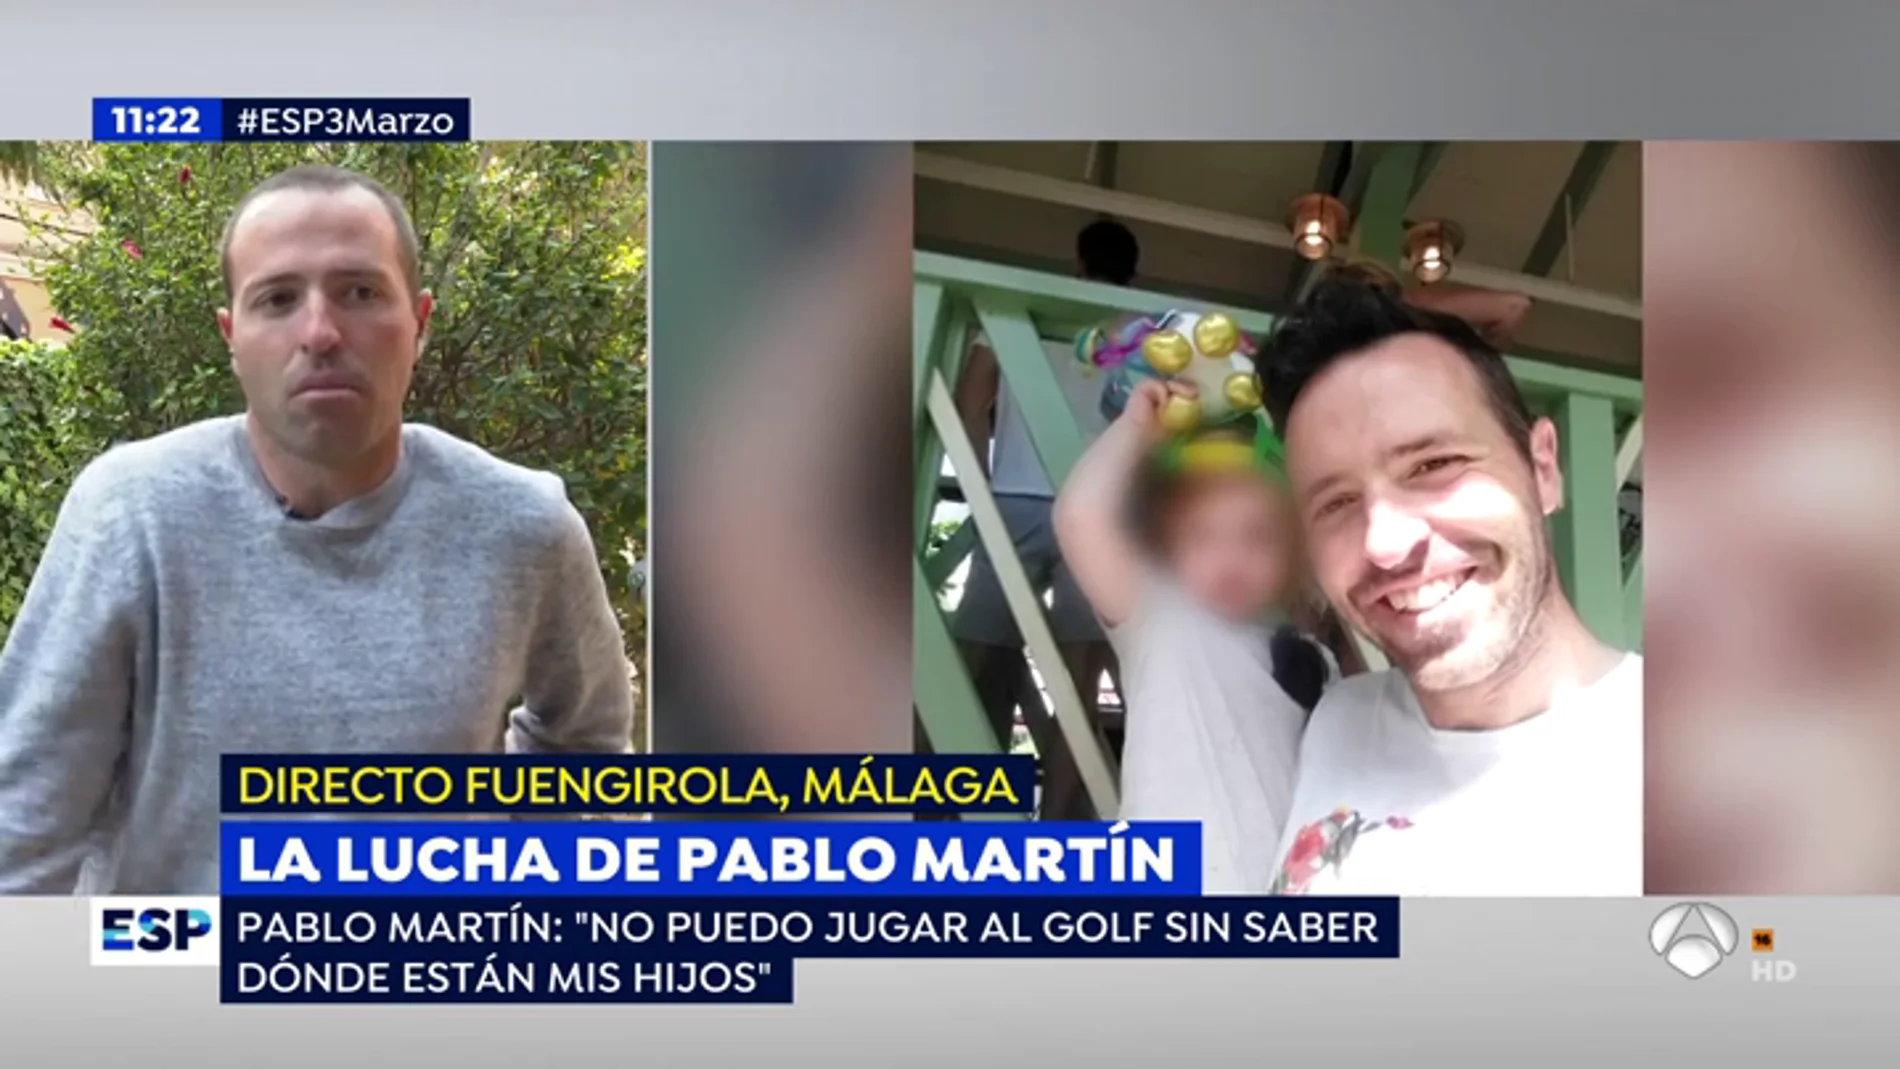 La lucha de Pablo Martín.